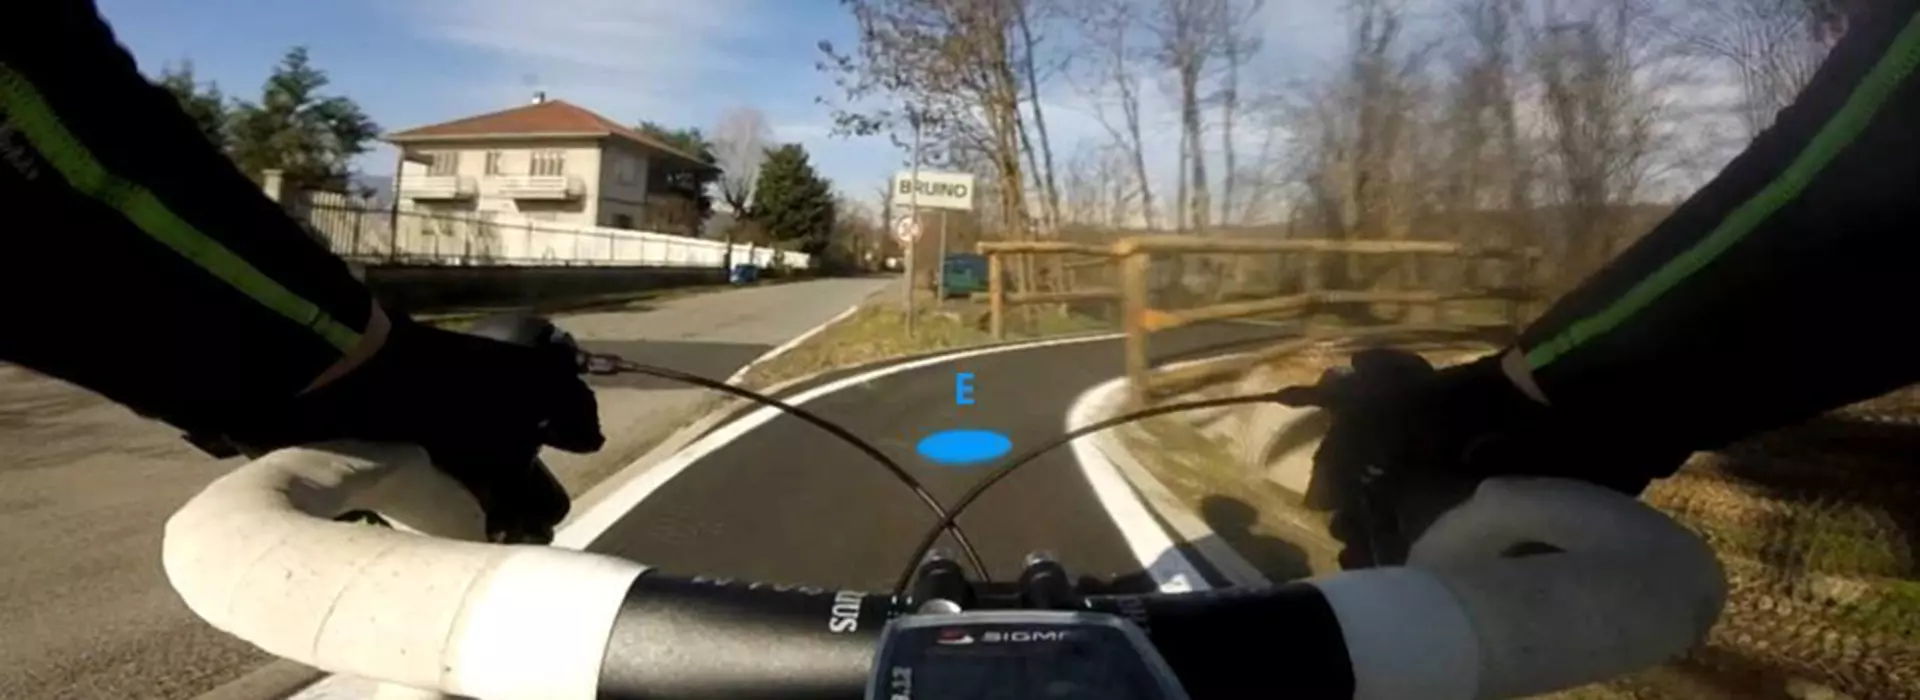 Immgine Frontale in Bicicletta Boeris Bikes Torino del Tratto Rivalta – Bruino con evidenziato il punto E della via fluviale del Sangone Fiume 